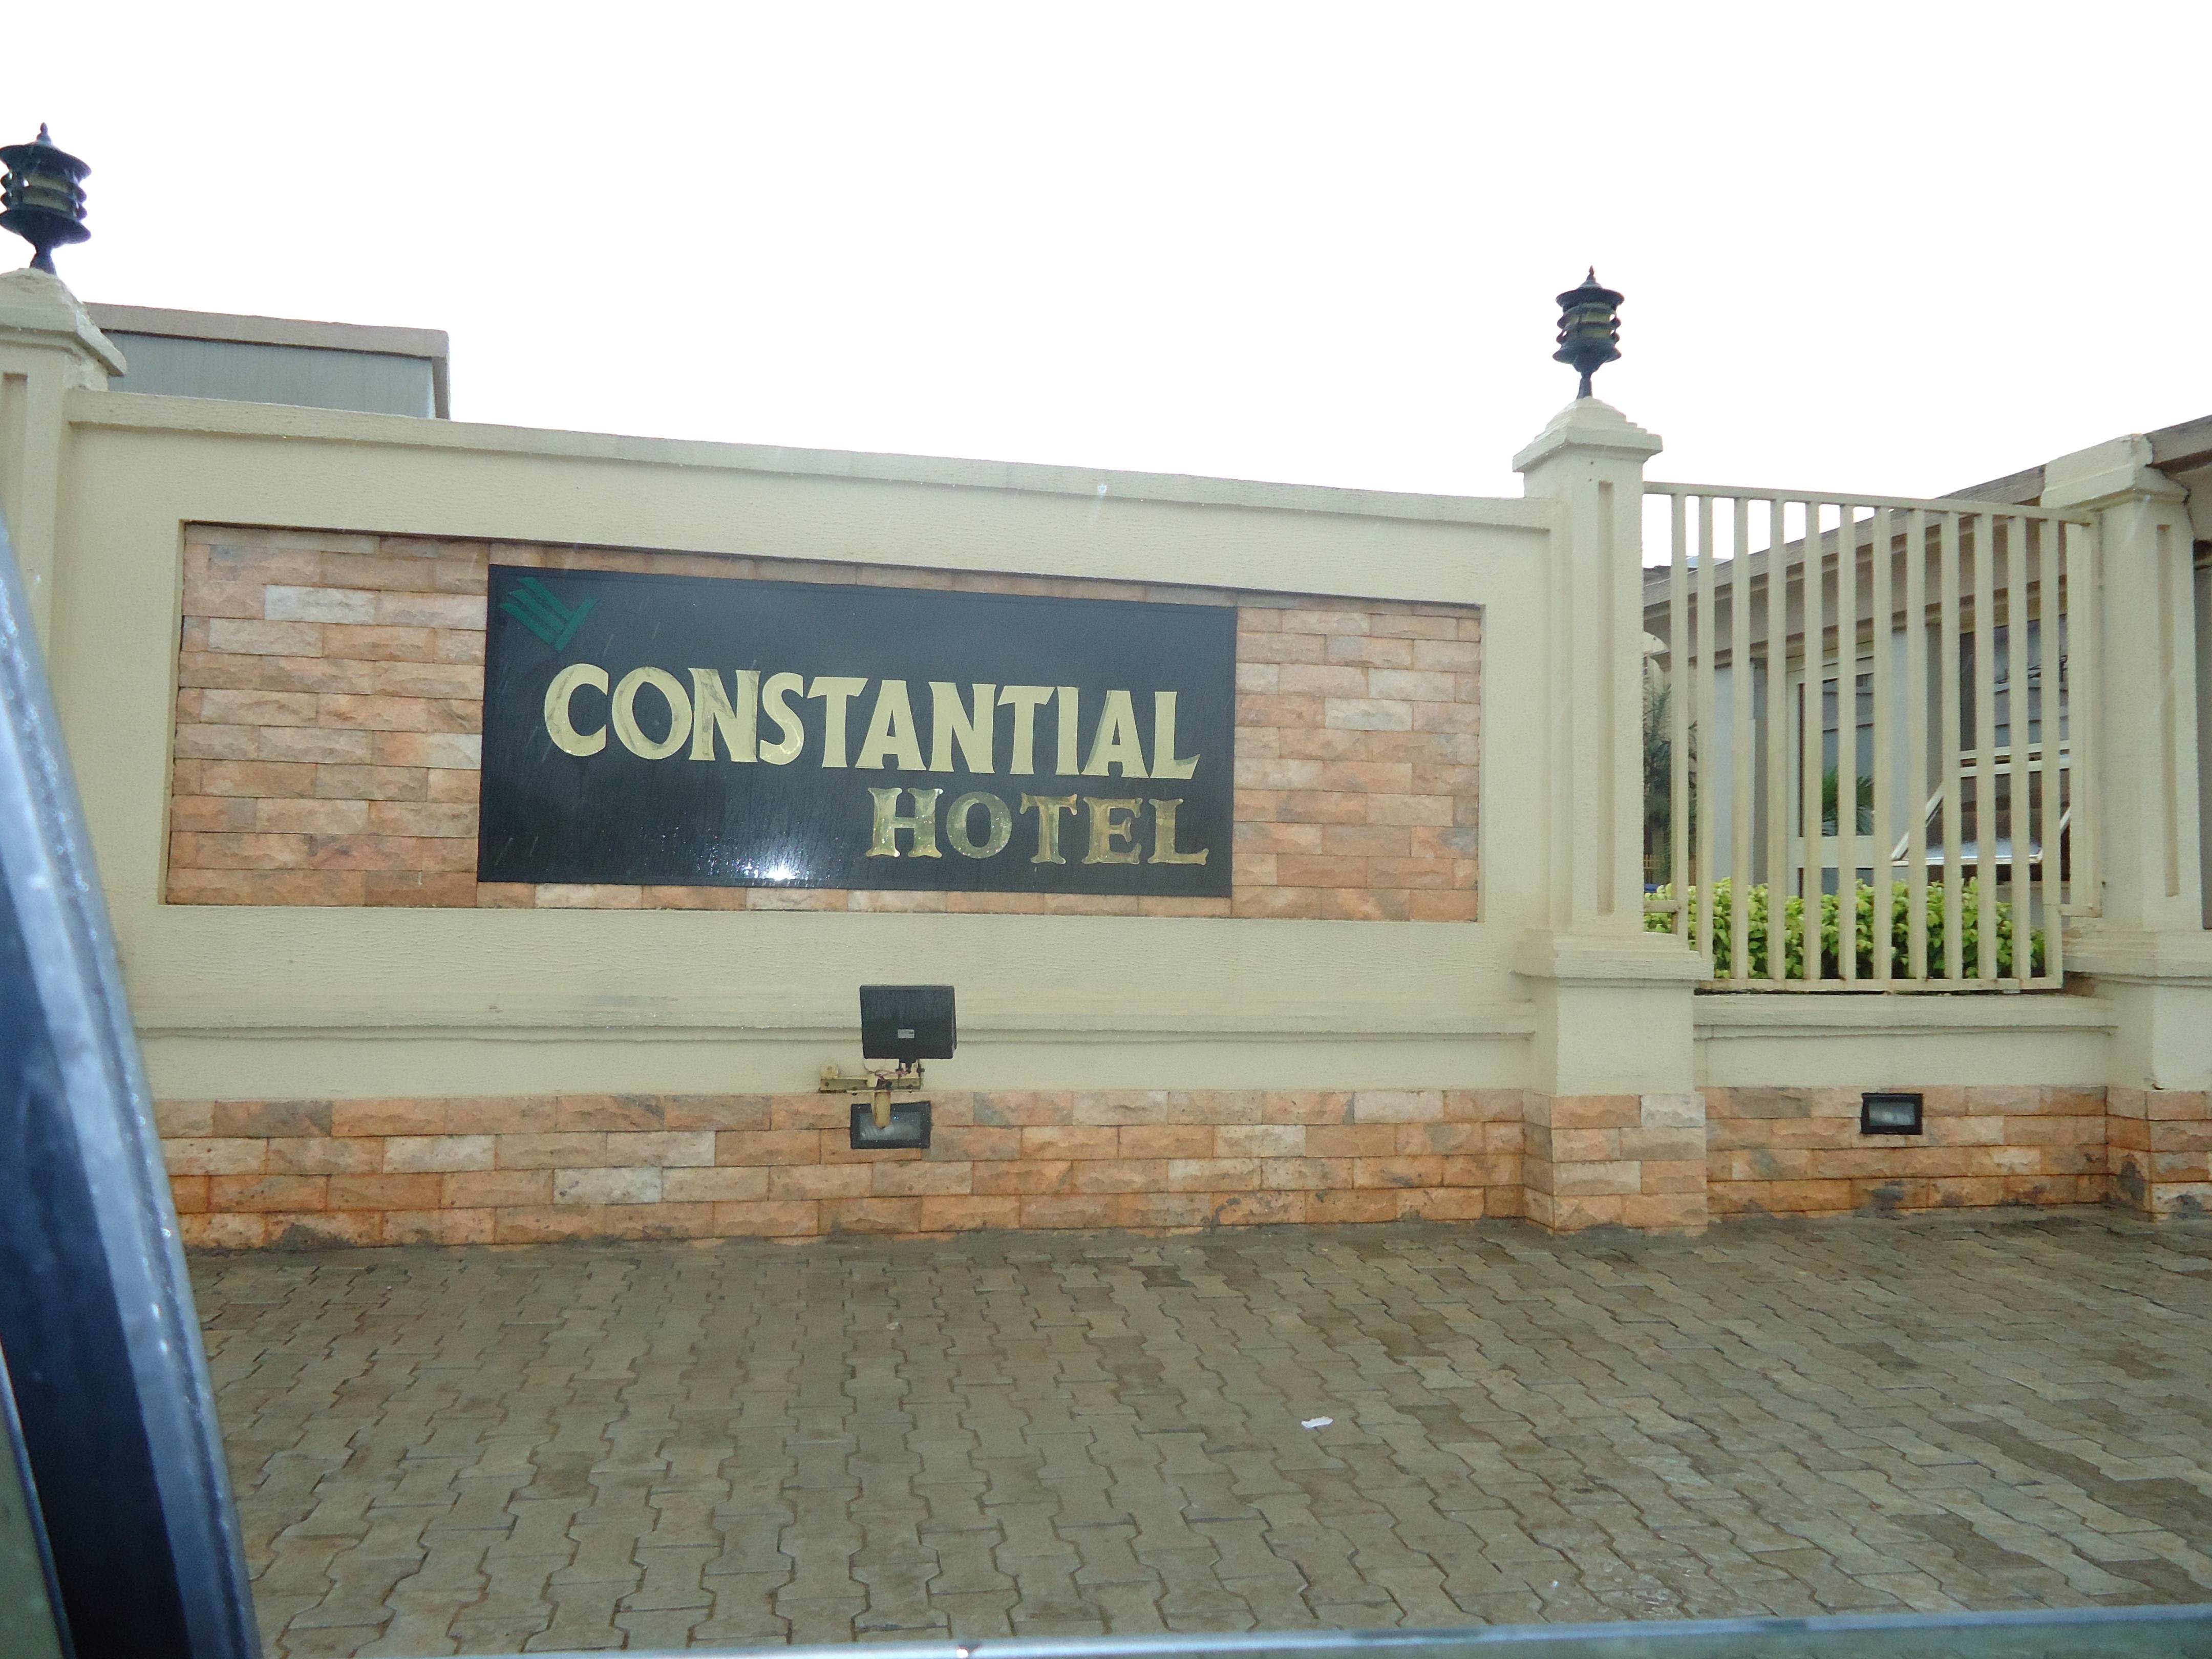 Constantial Hotel